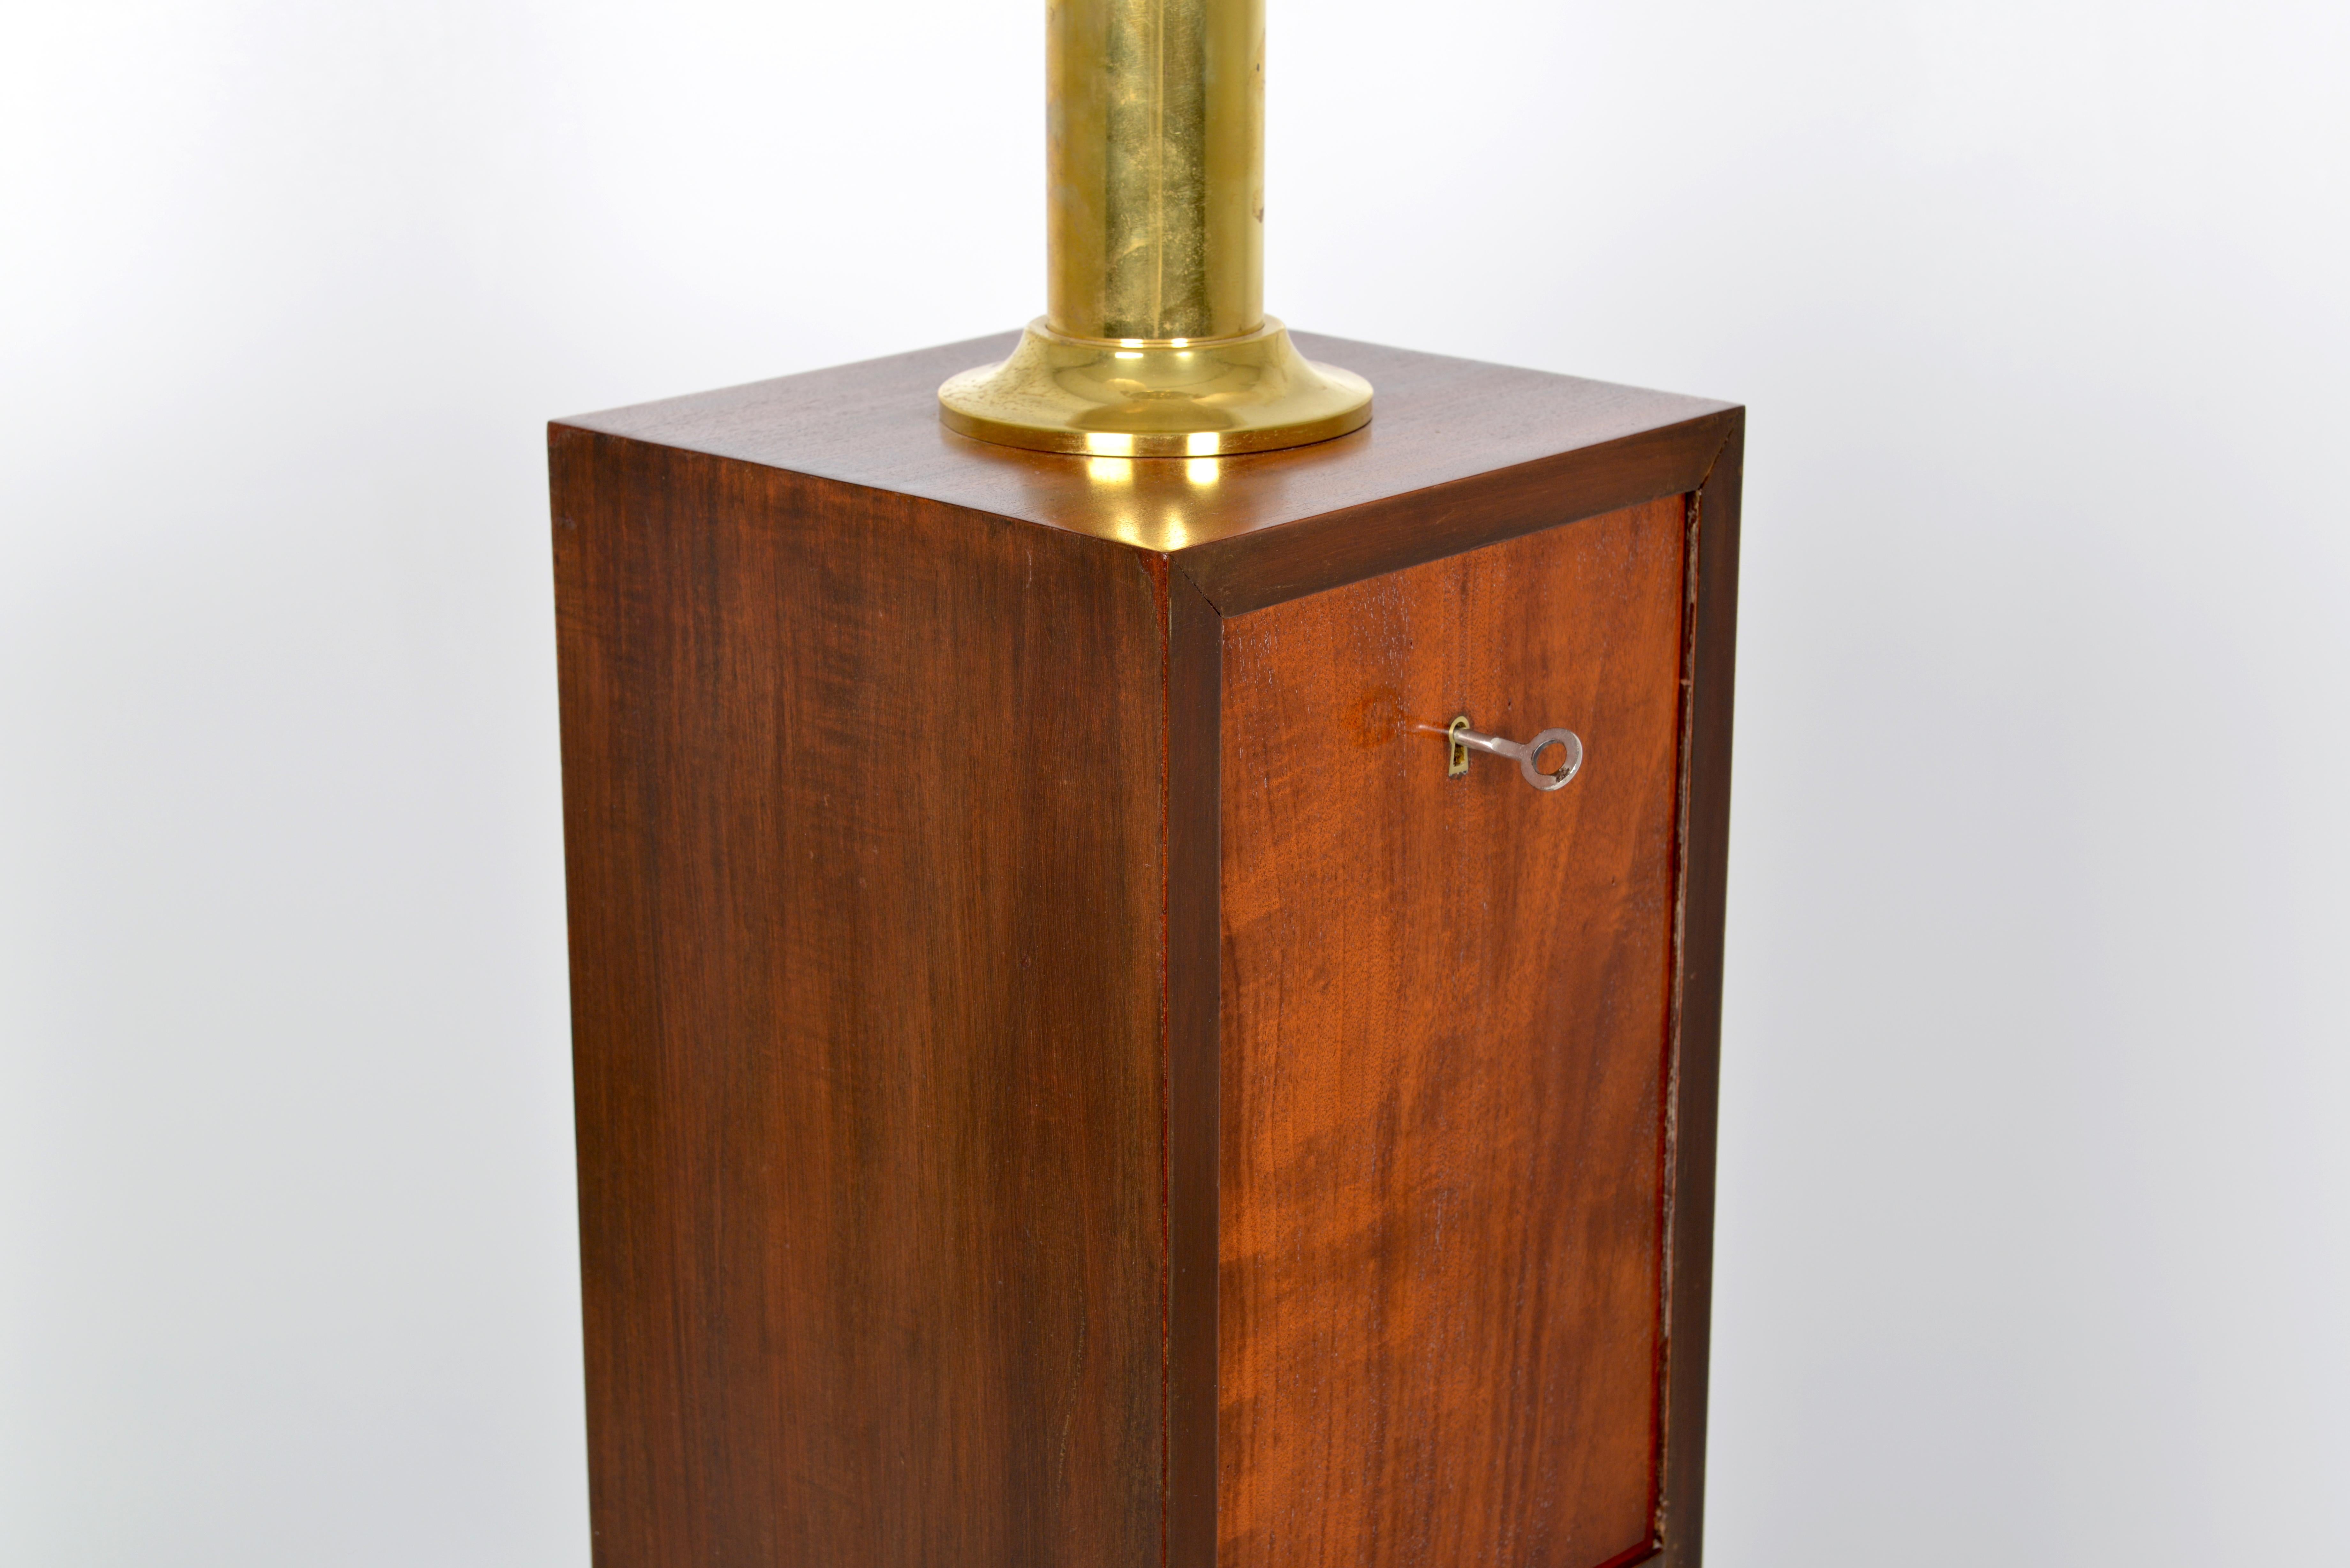 Belgian Art Deco Mahogany Standard Lamp, circa 1930 For Sale 4